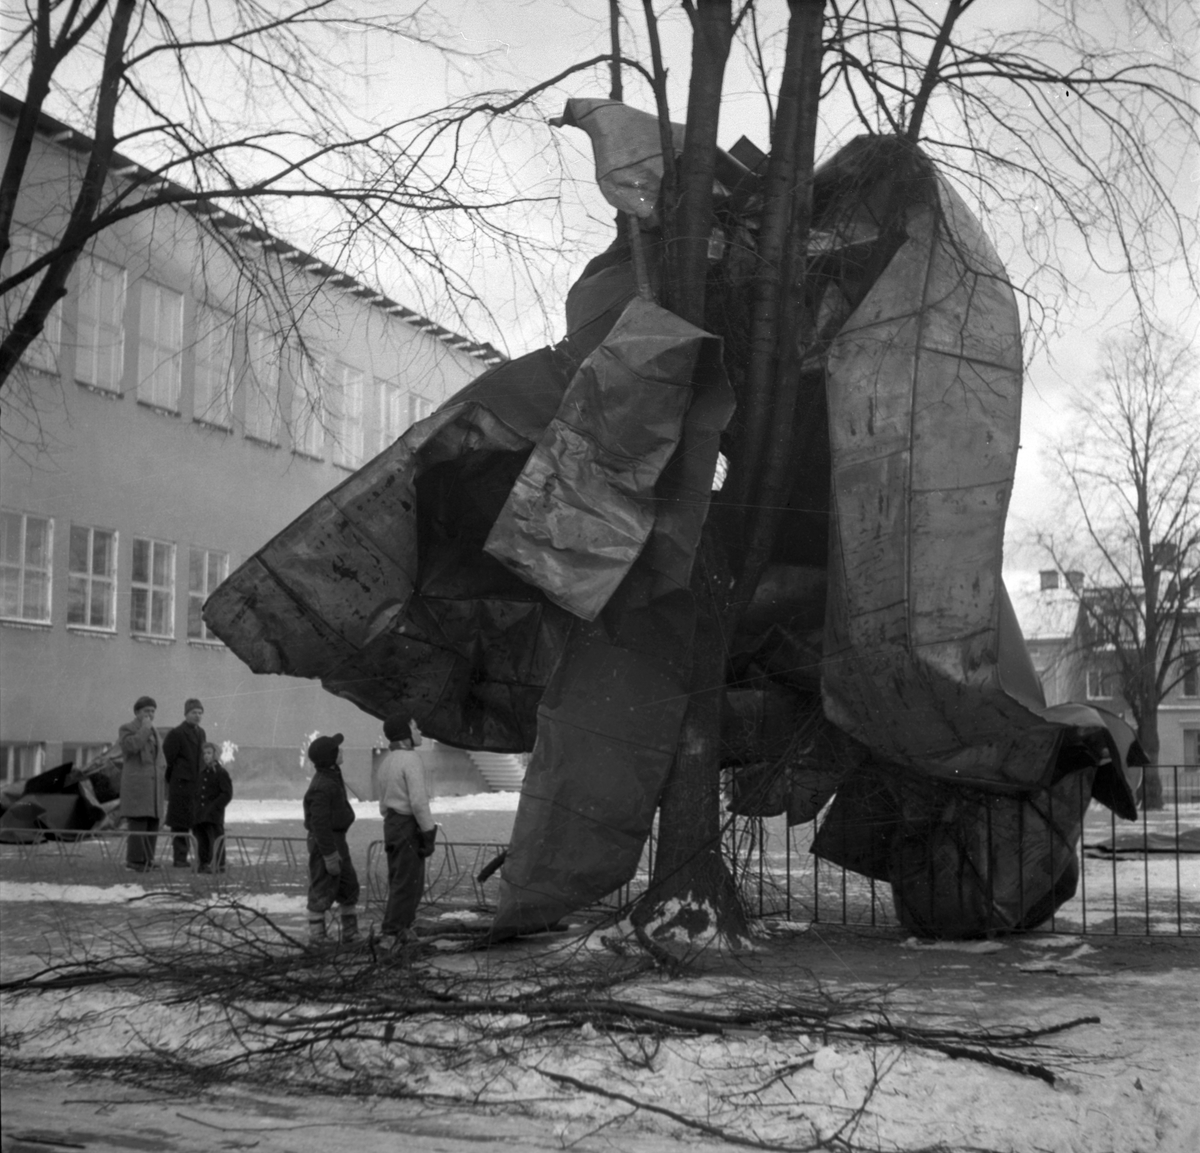 Storm över Gävle. 8 januari 1954.
Norra gymnastikhuset vid Norra skolan. Husen i bakgrunden på Norra Köpmangatan.